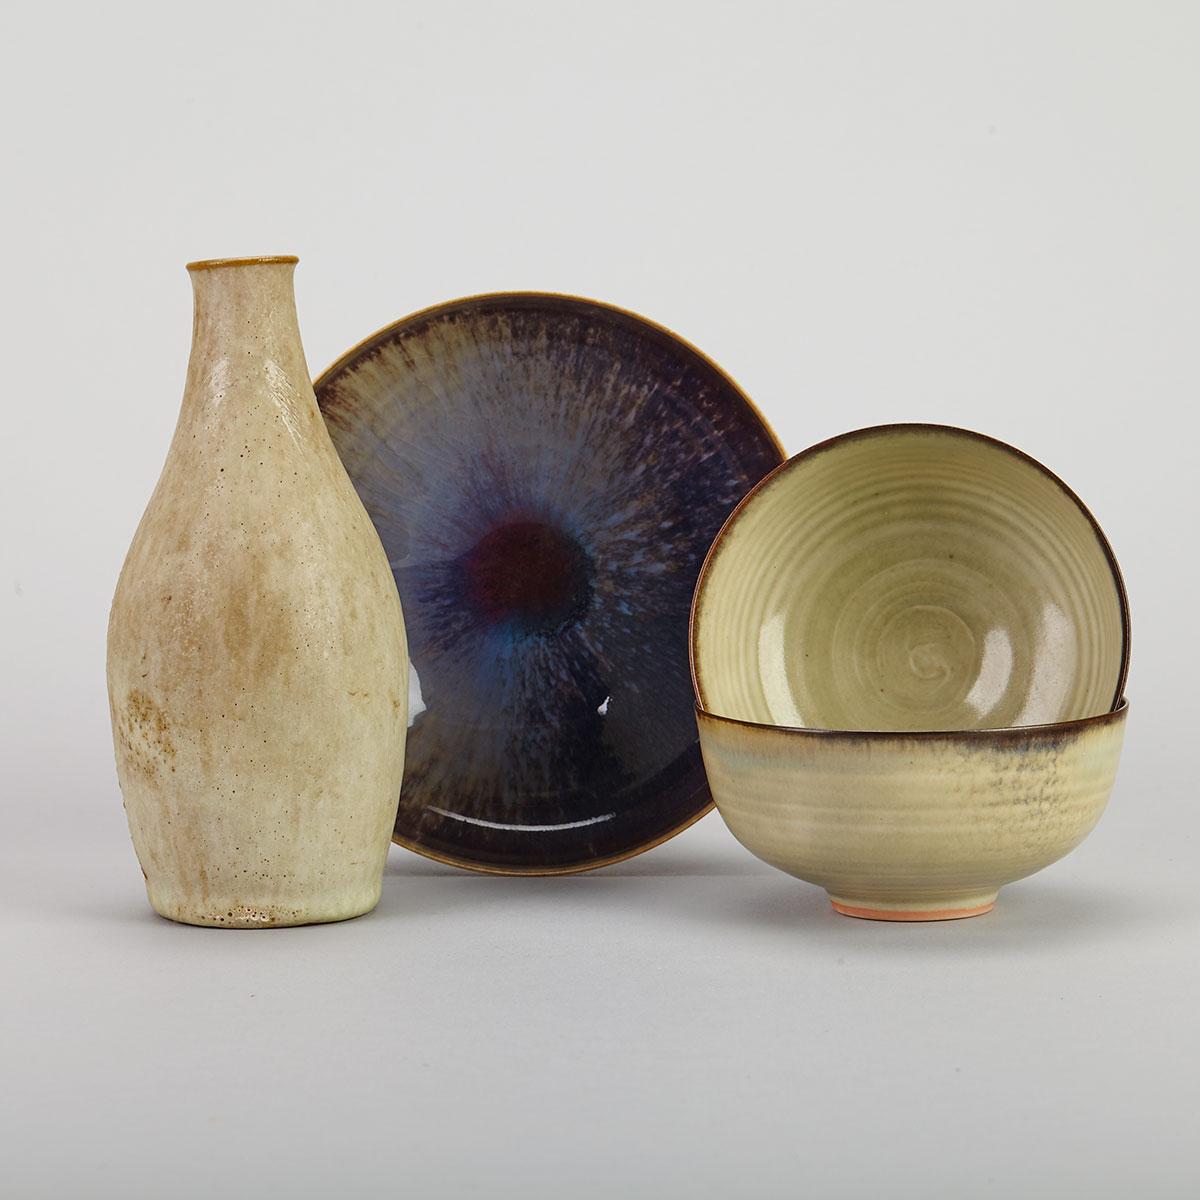 Three Werkstatt Hohlt Glazed Stoneware Bowls and a Vase, mid-20th century